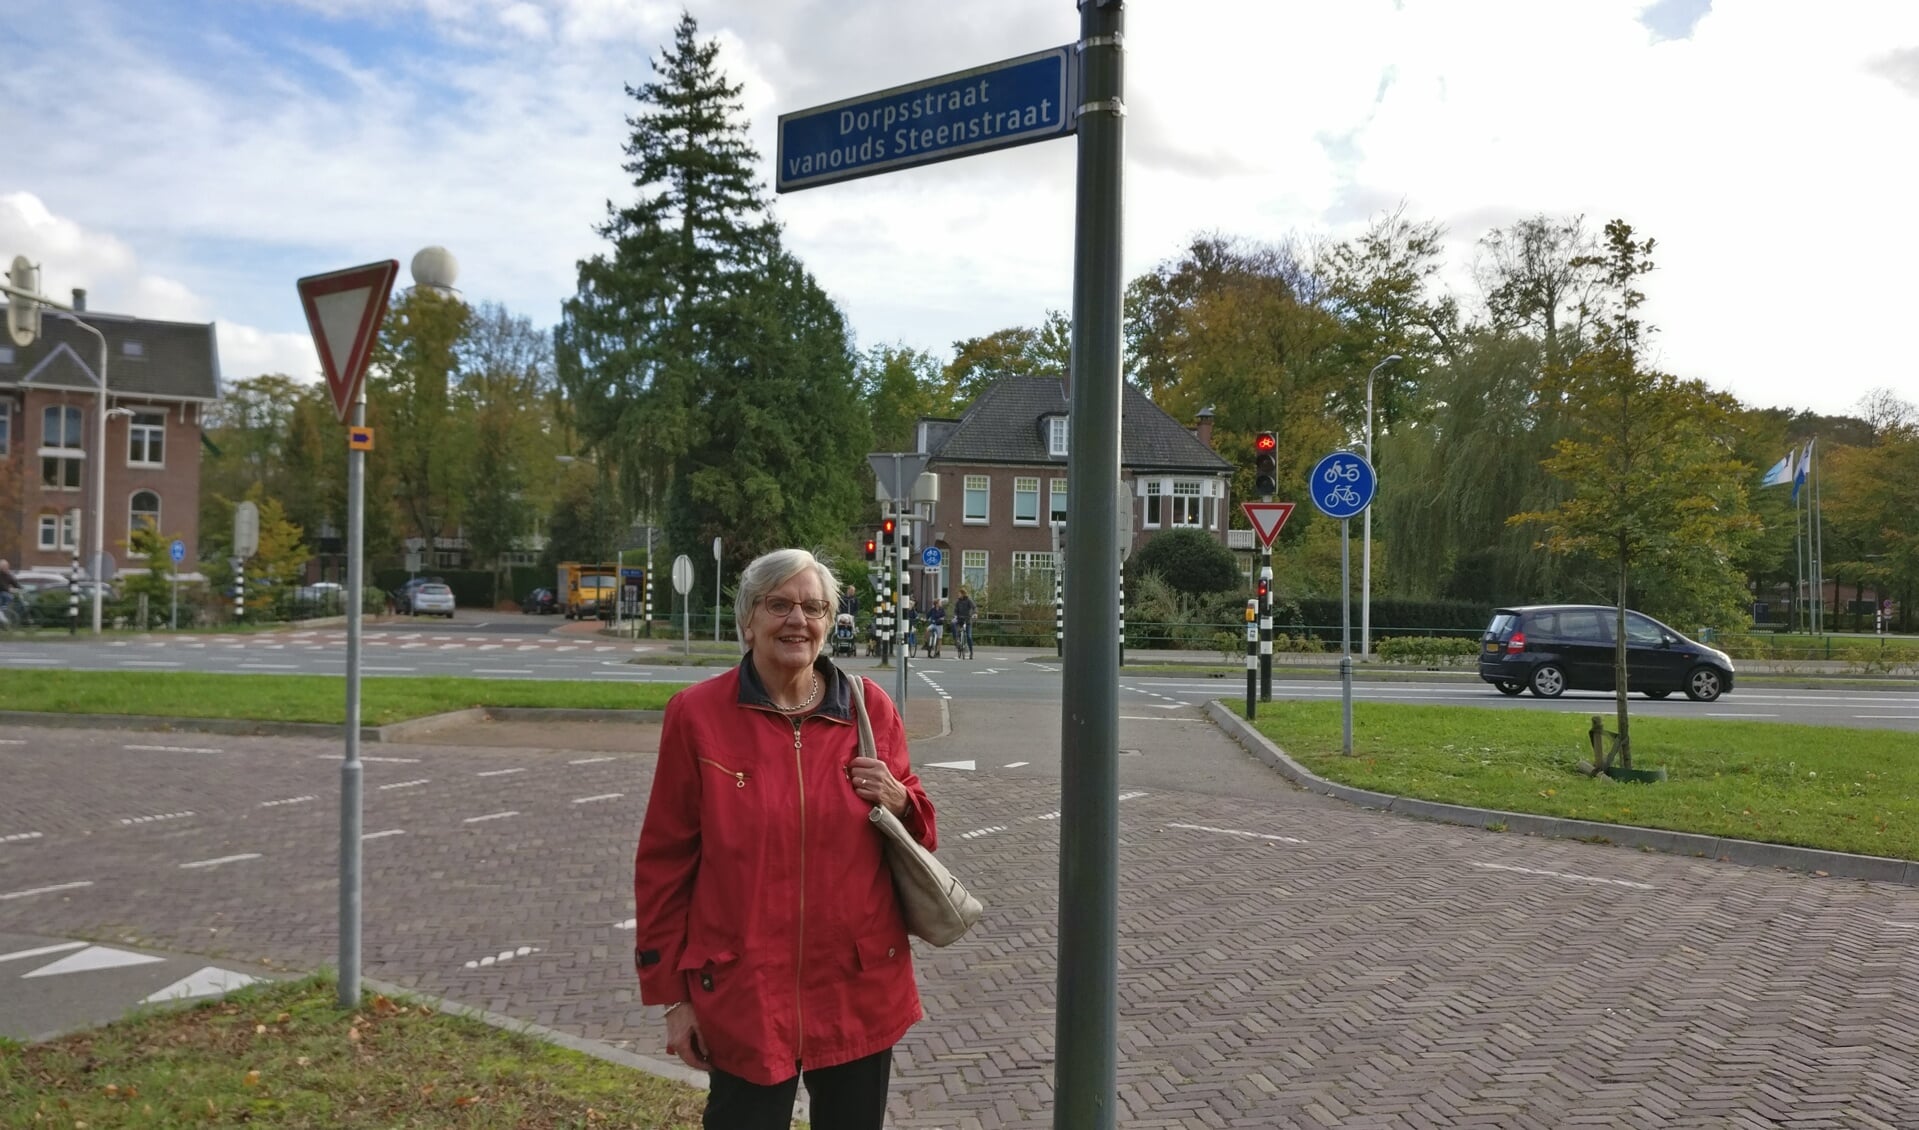  Lies Haan bij een bordje van de 'Dorpsstraat vanouds Steenstraat'op de hoek met de Bilthovenseweg.